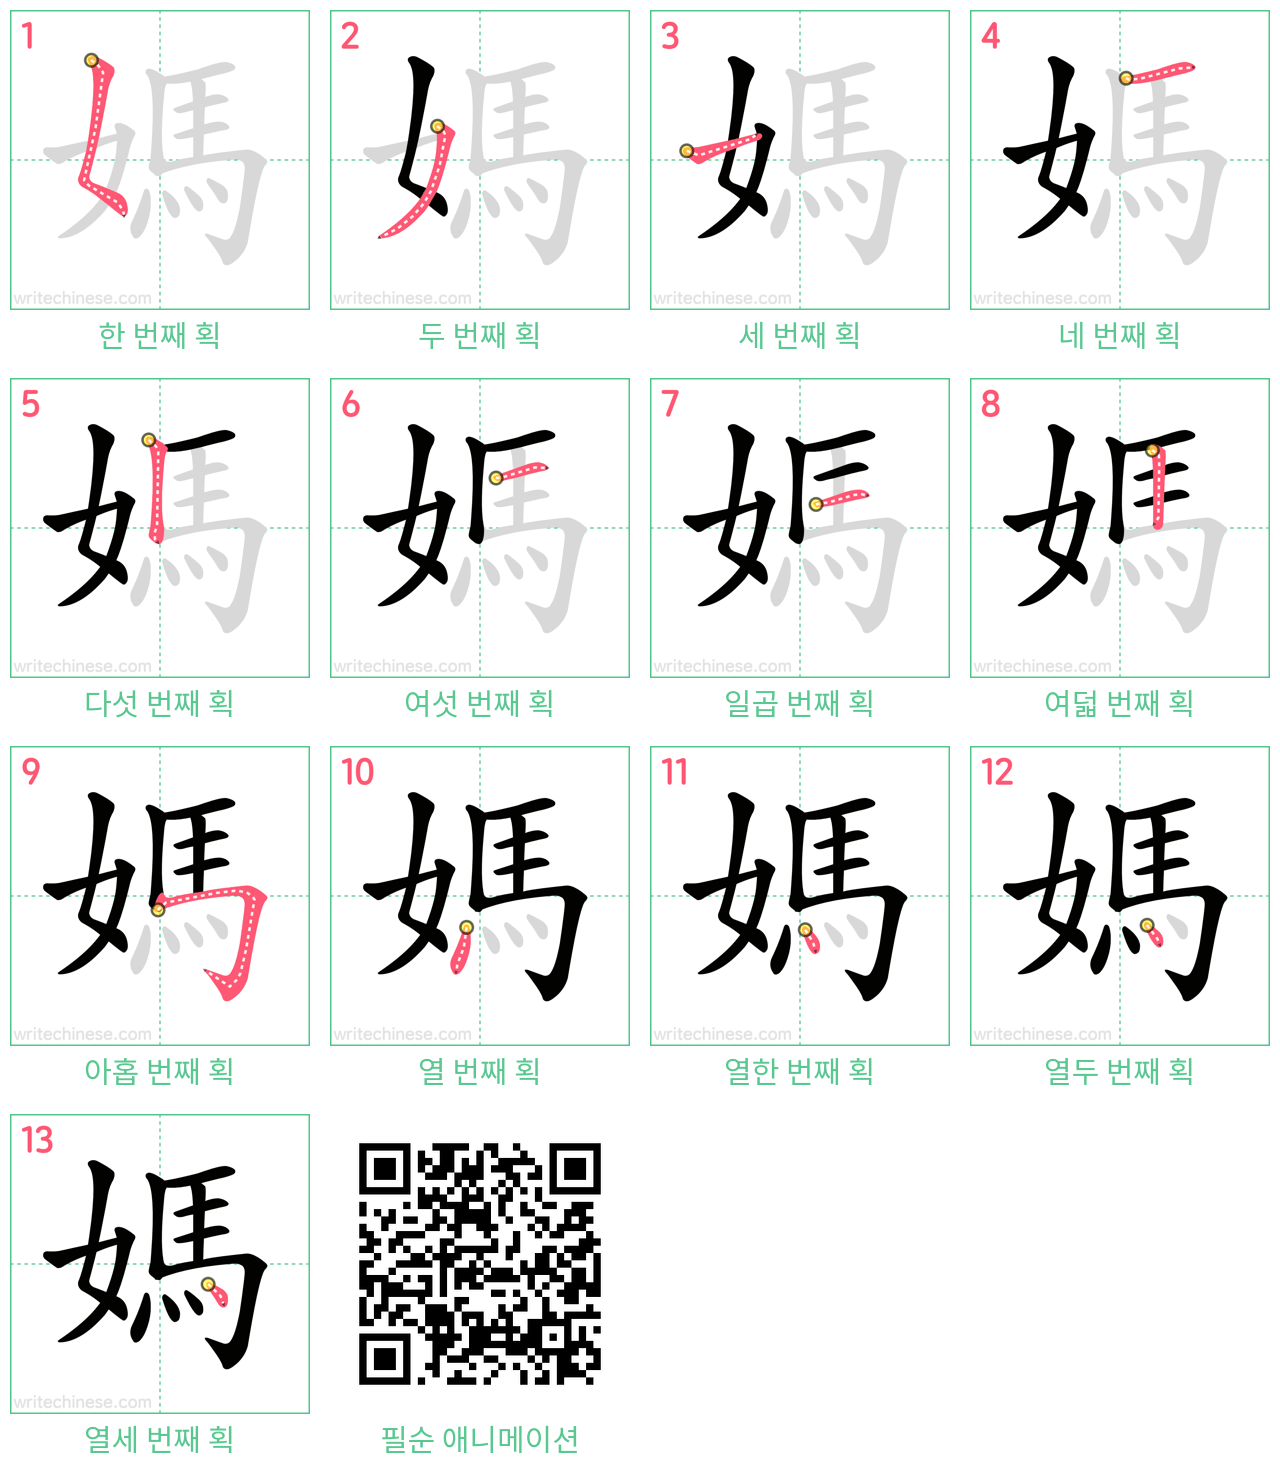 媽 step-by-step stroke order diagrams